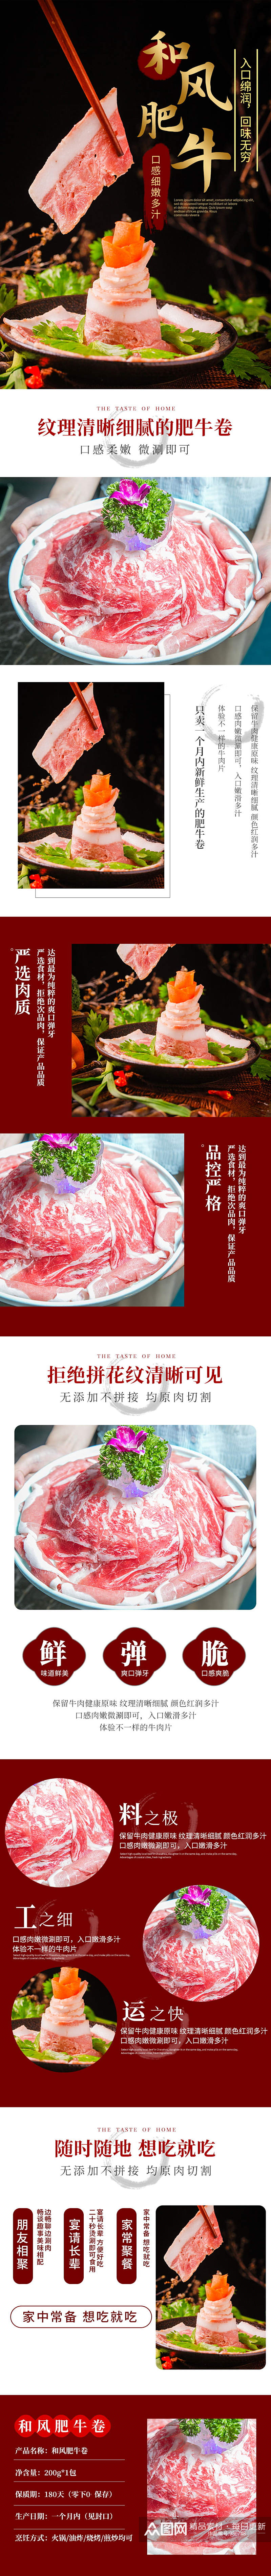 肉类火锅料理肥牛卷牛肉卷详情页素材